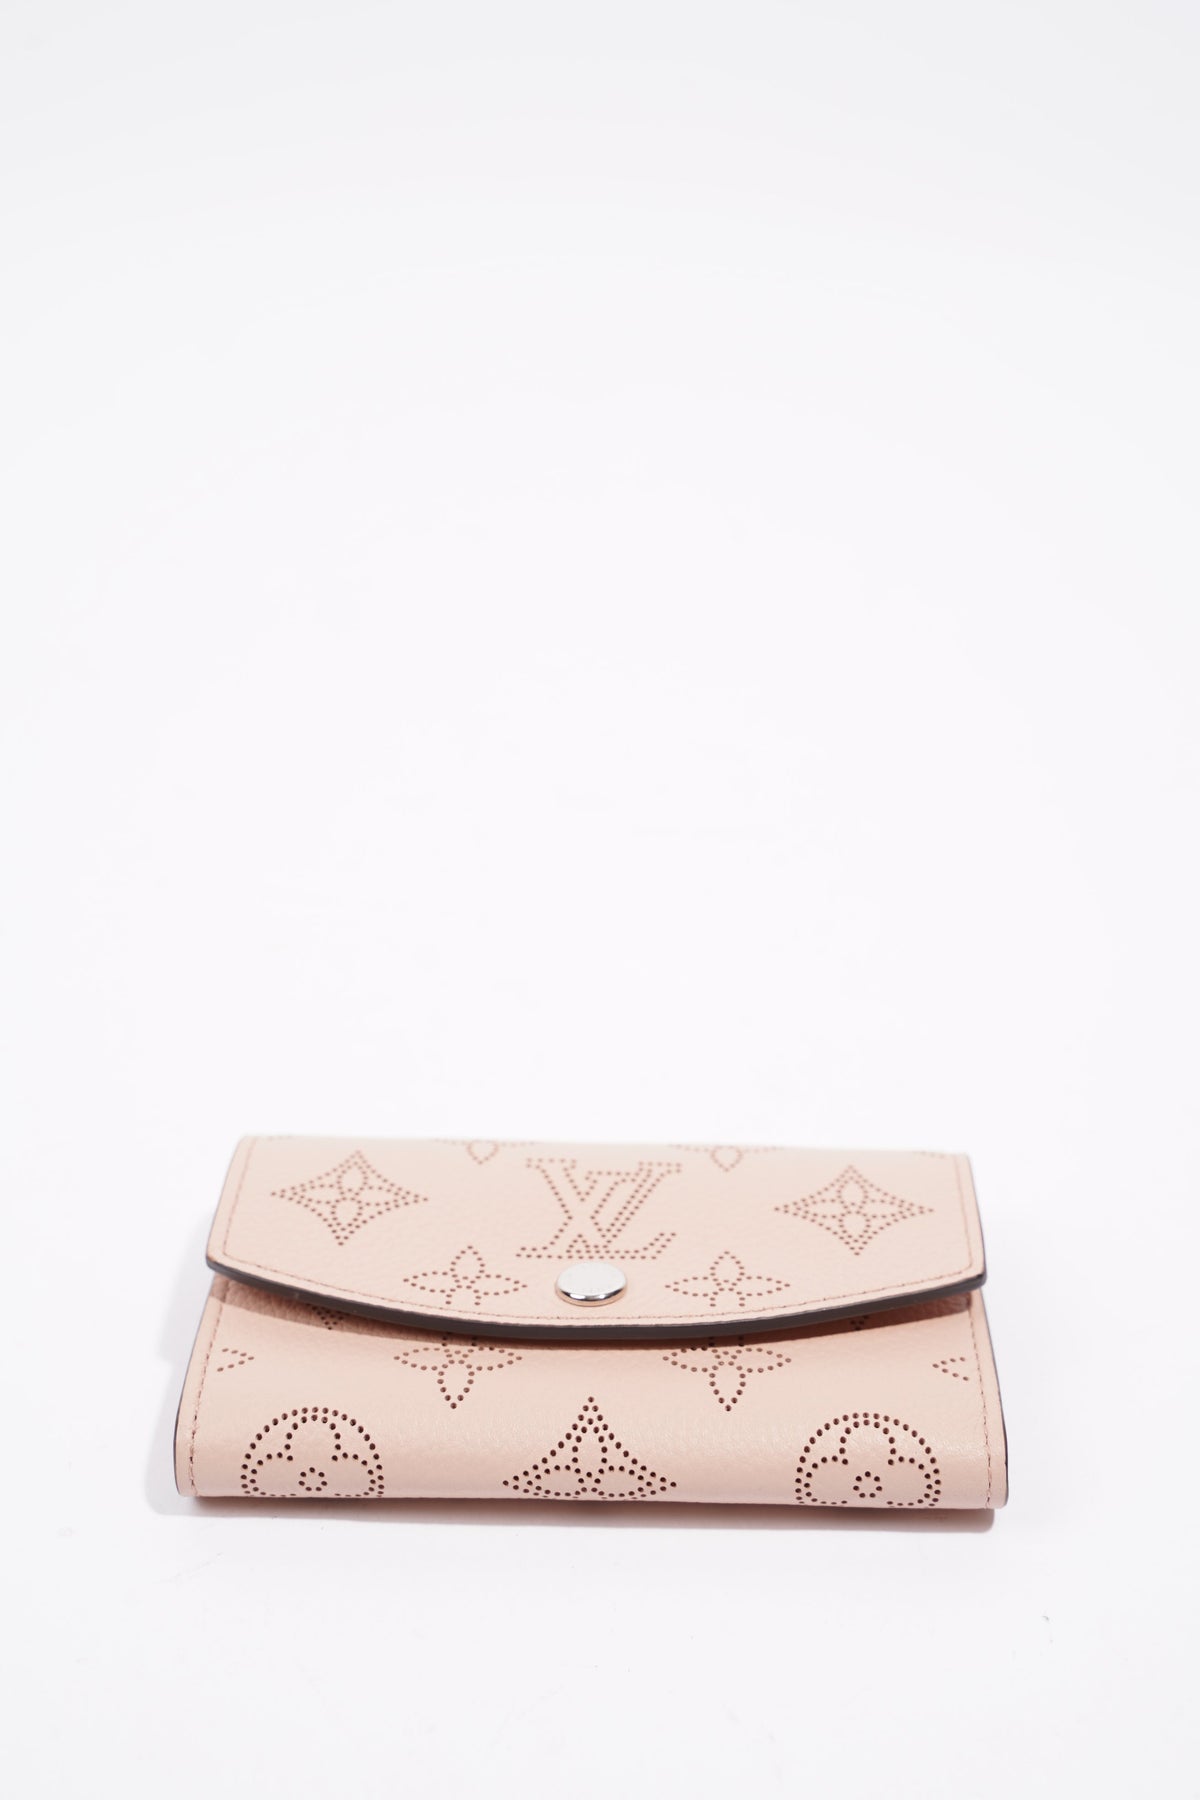 Louis Vuitton - Iris XS Wallet - Leather - Magnolia - Women - Luxury